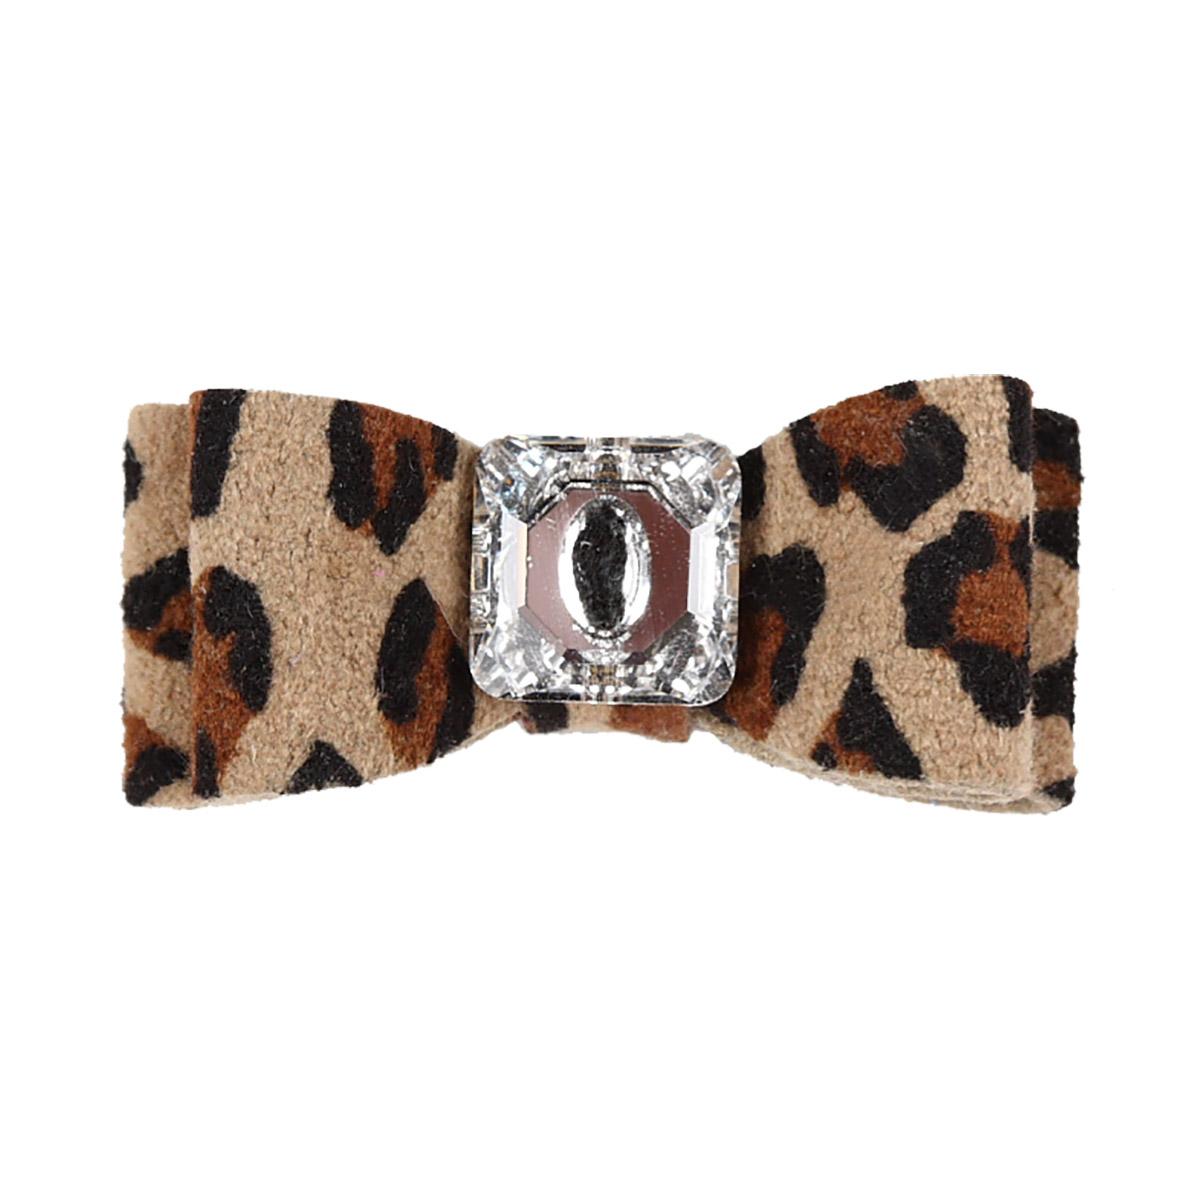 Cheetah Couture Big Bow Dog Hair Bow by Susan Lanci - Brown Cheetah